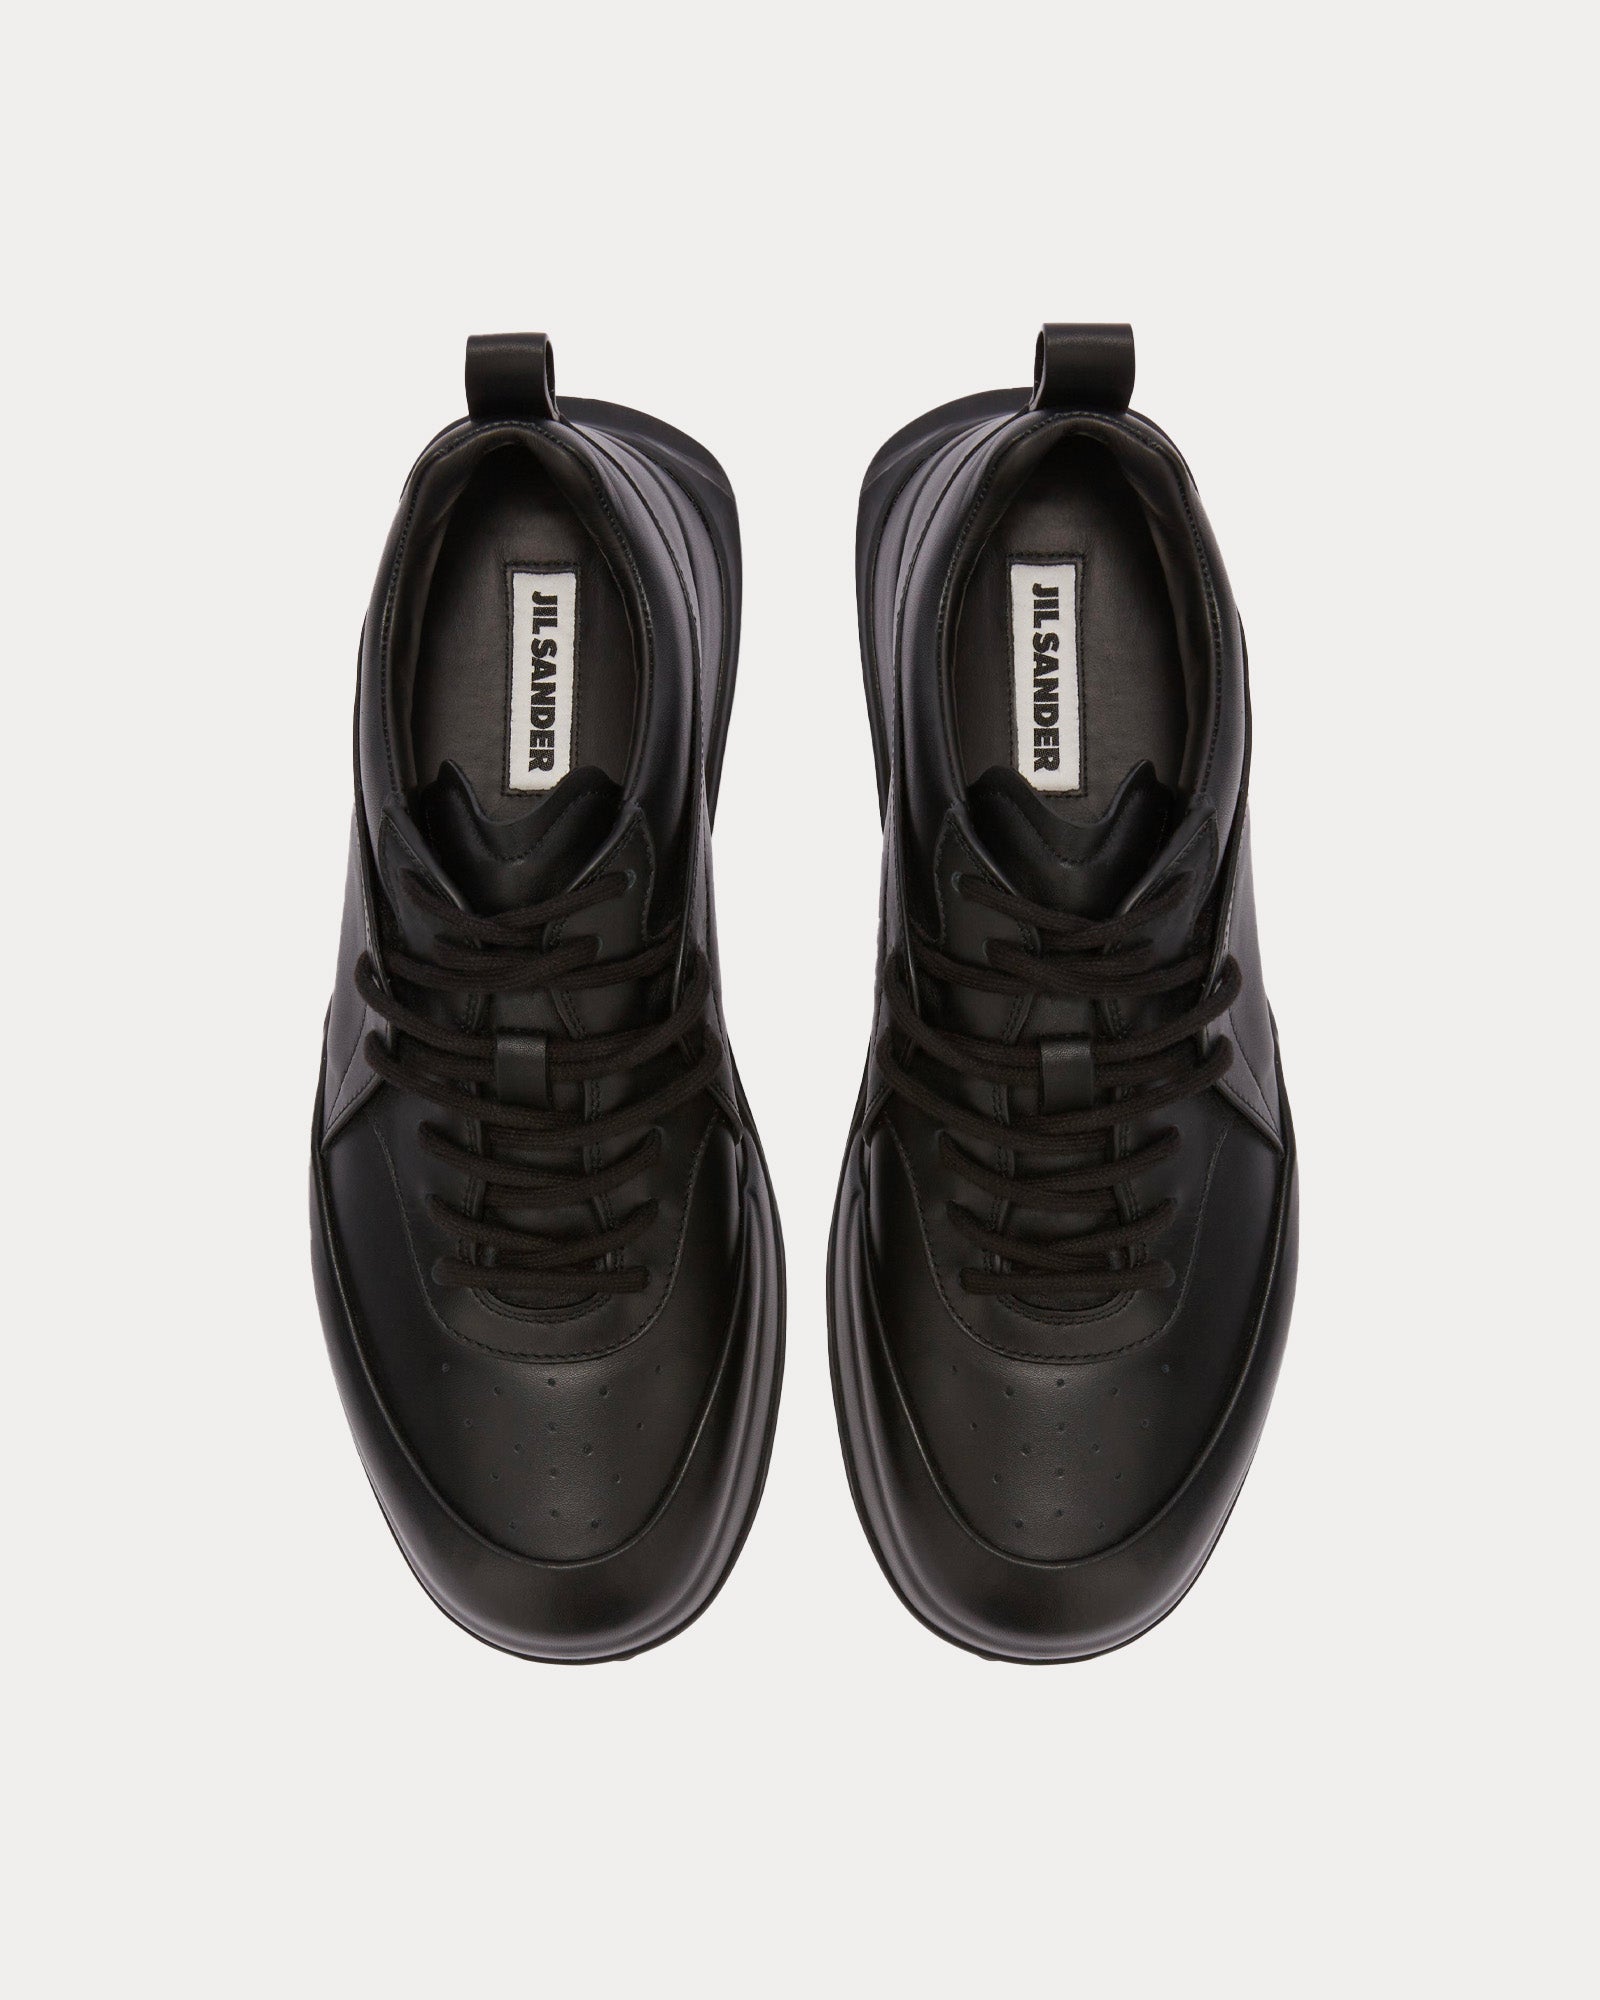 Jil Sander - Orb Leather Black Low Top Sneakers